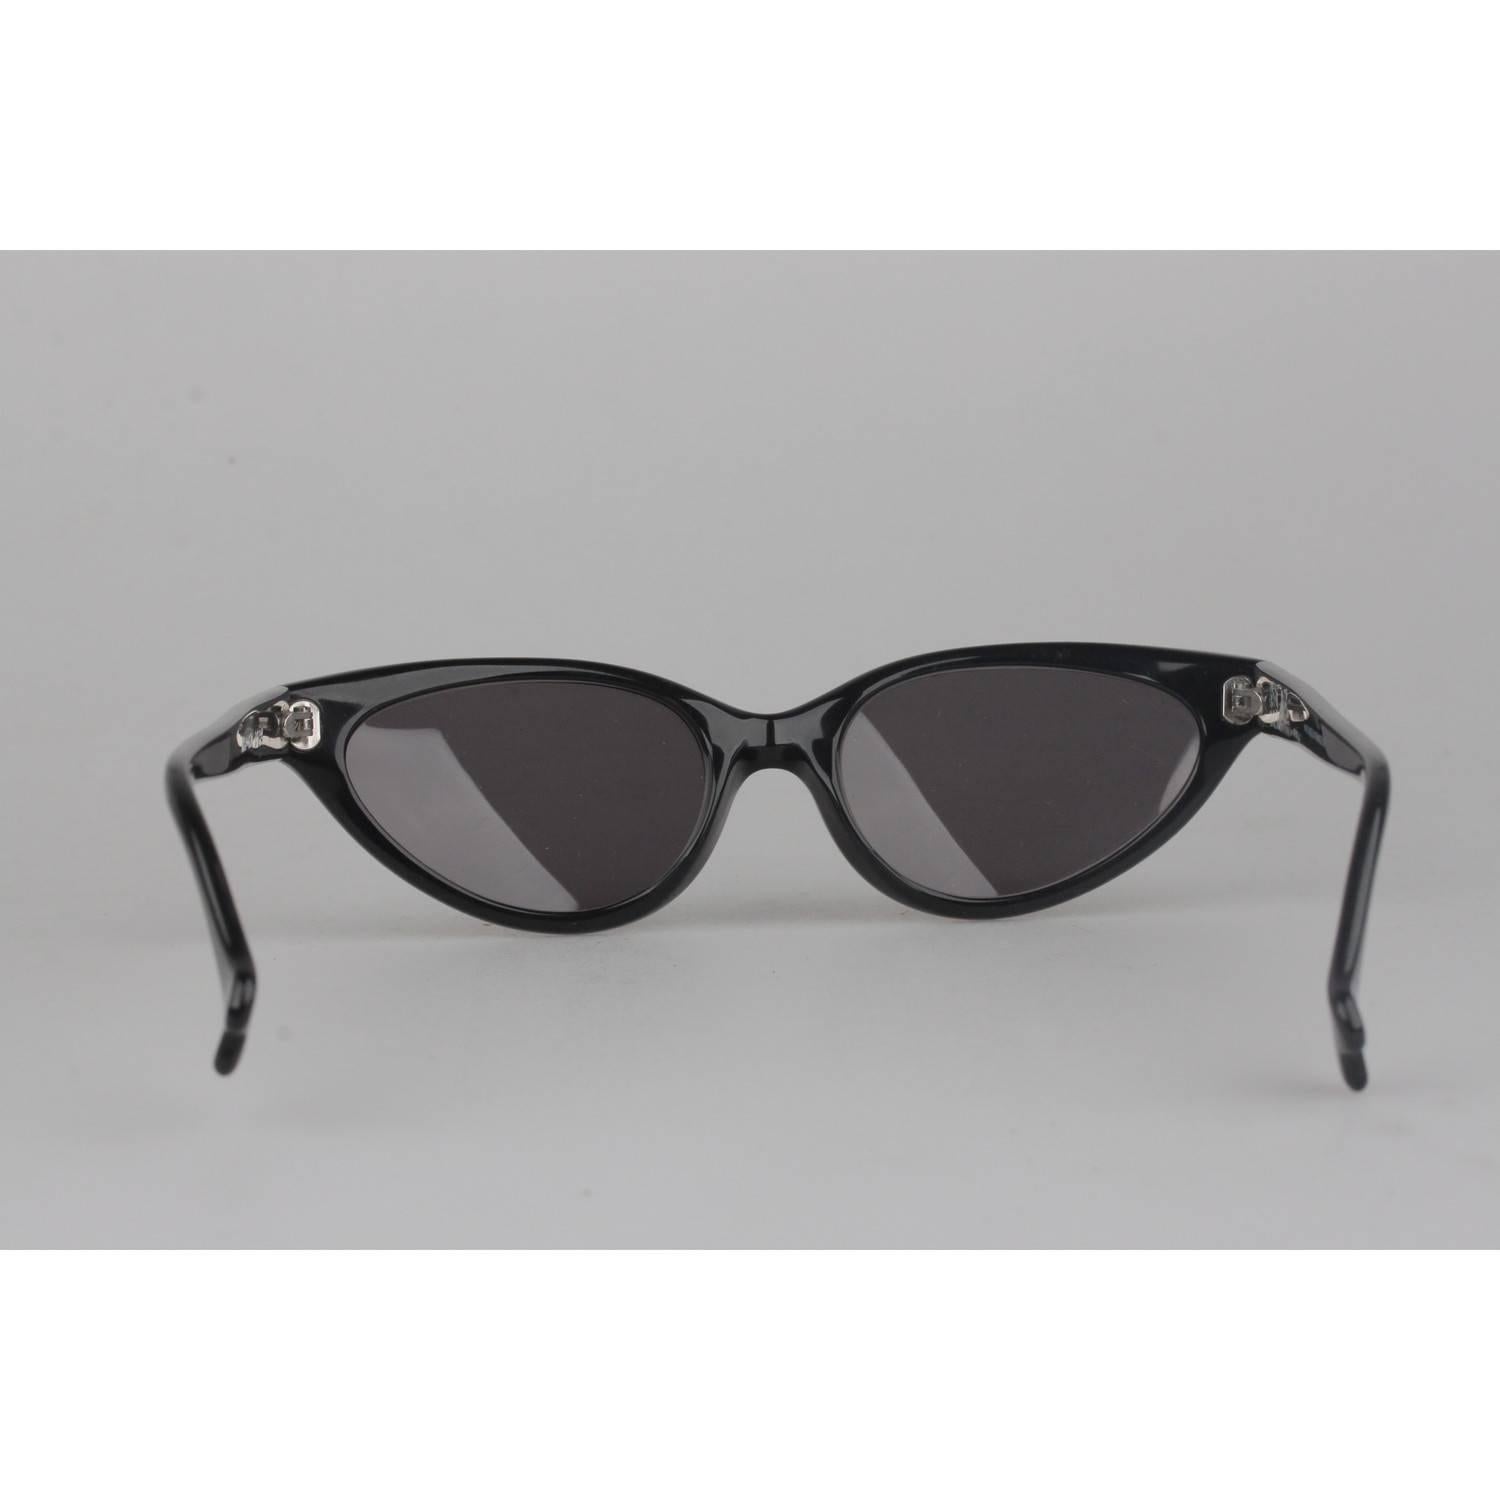 Women's ALAIN MIKLI Paris Vintage D304 Sunglasses for 101 Dalmatians 1996